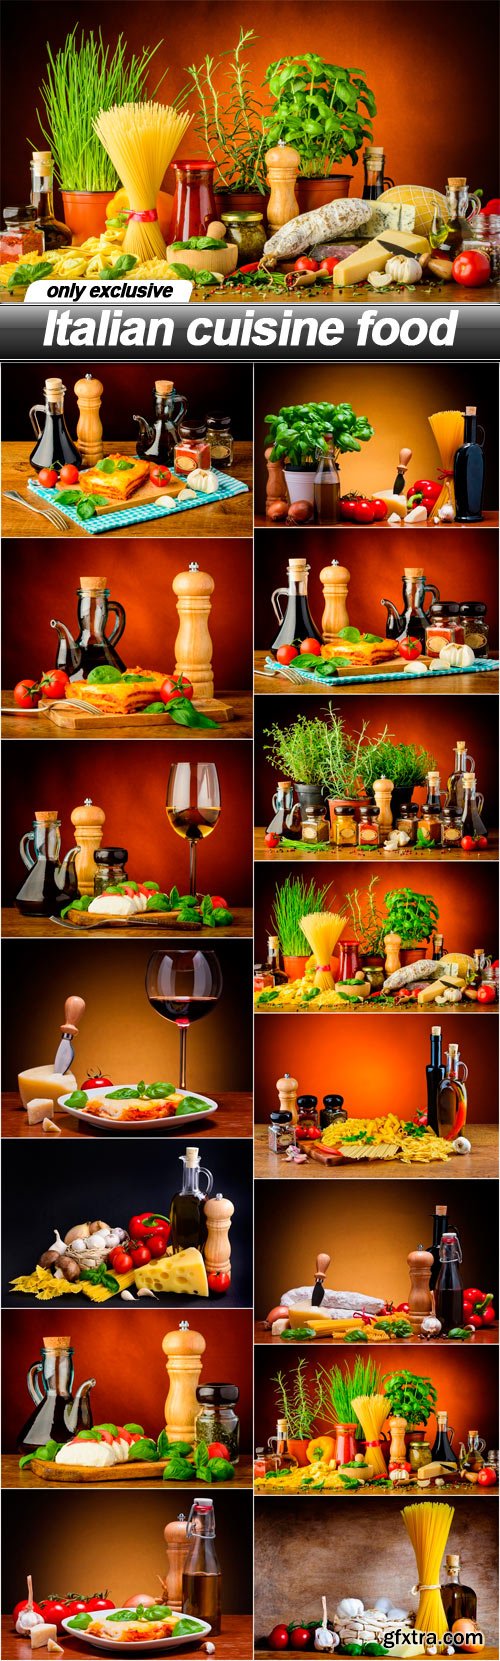 Italian cuisine food - 15 UHQ JPEG